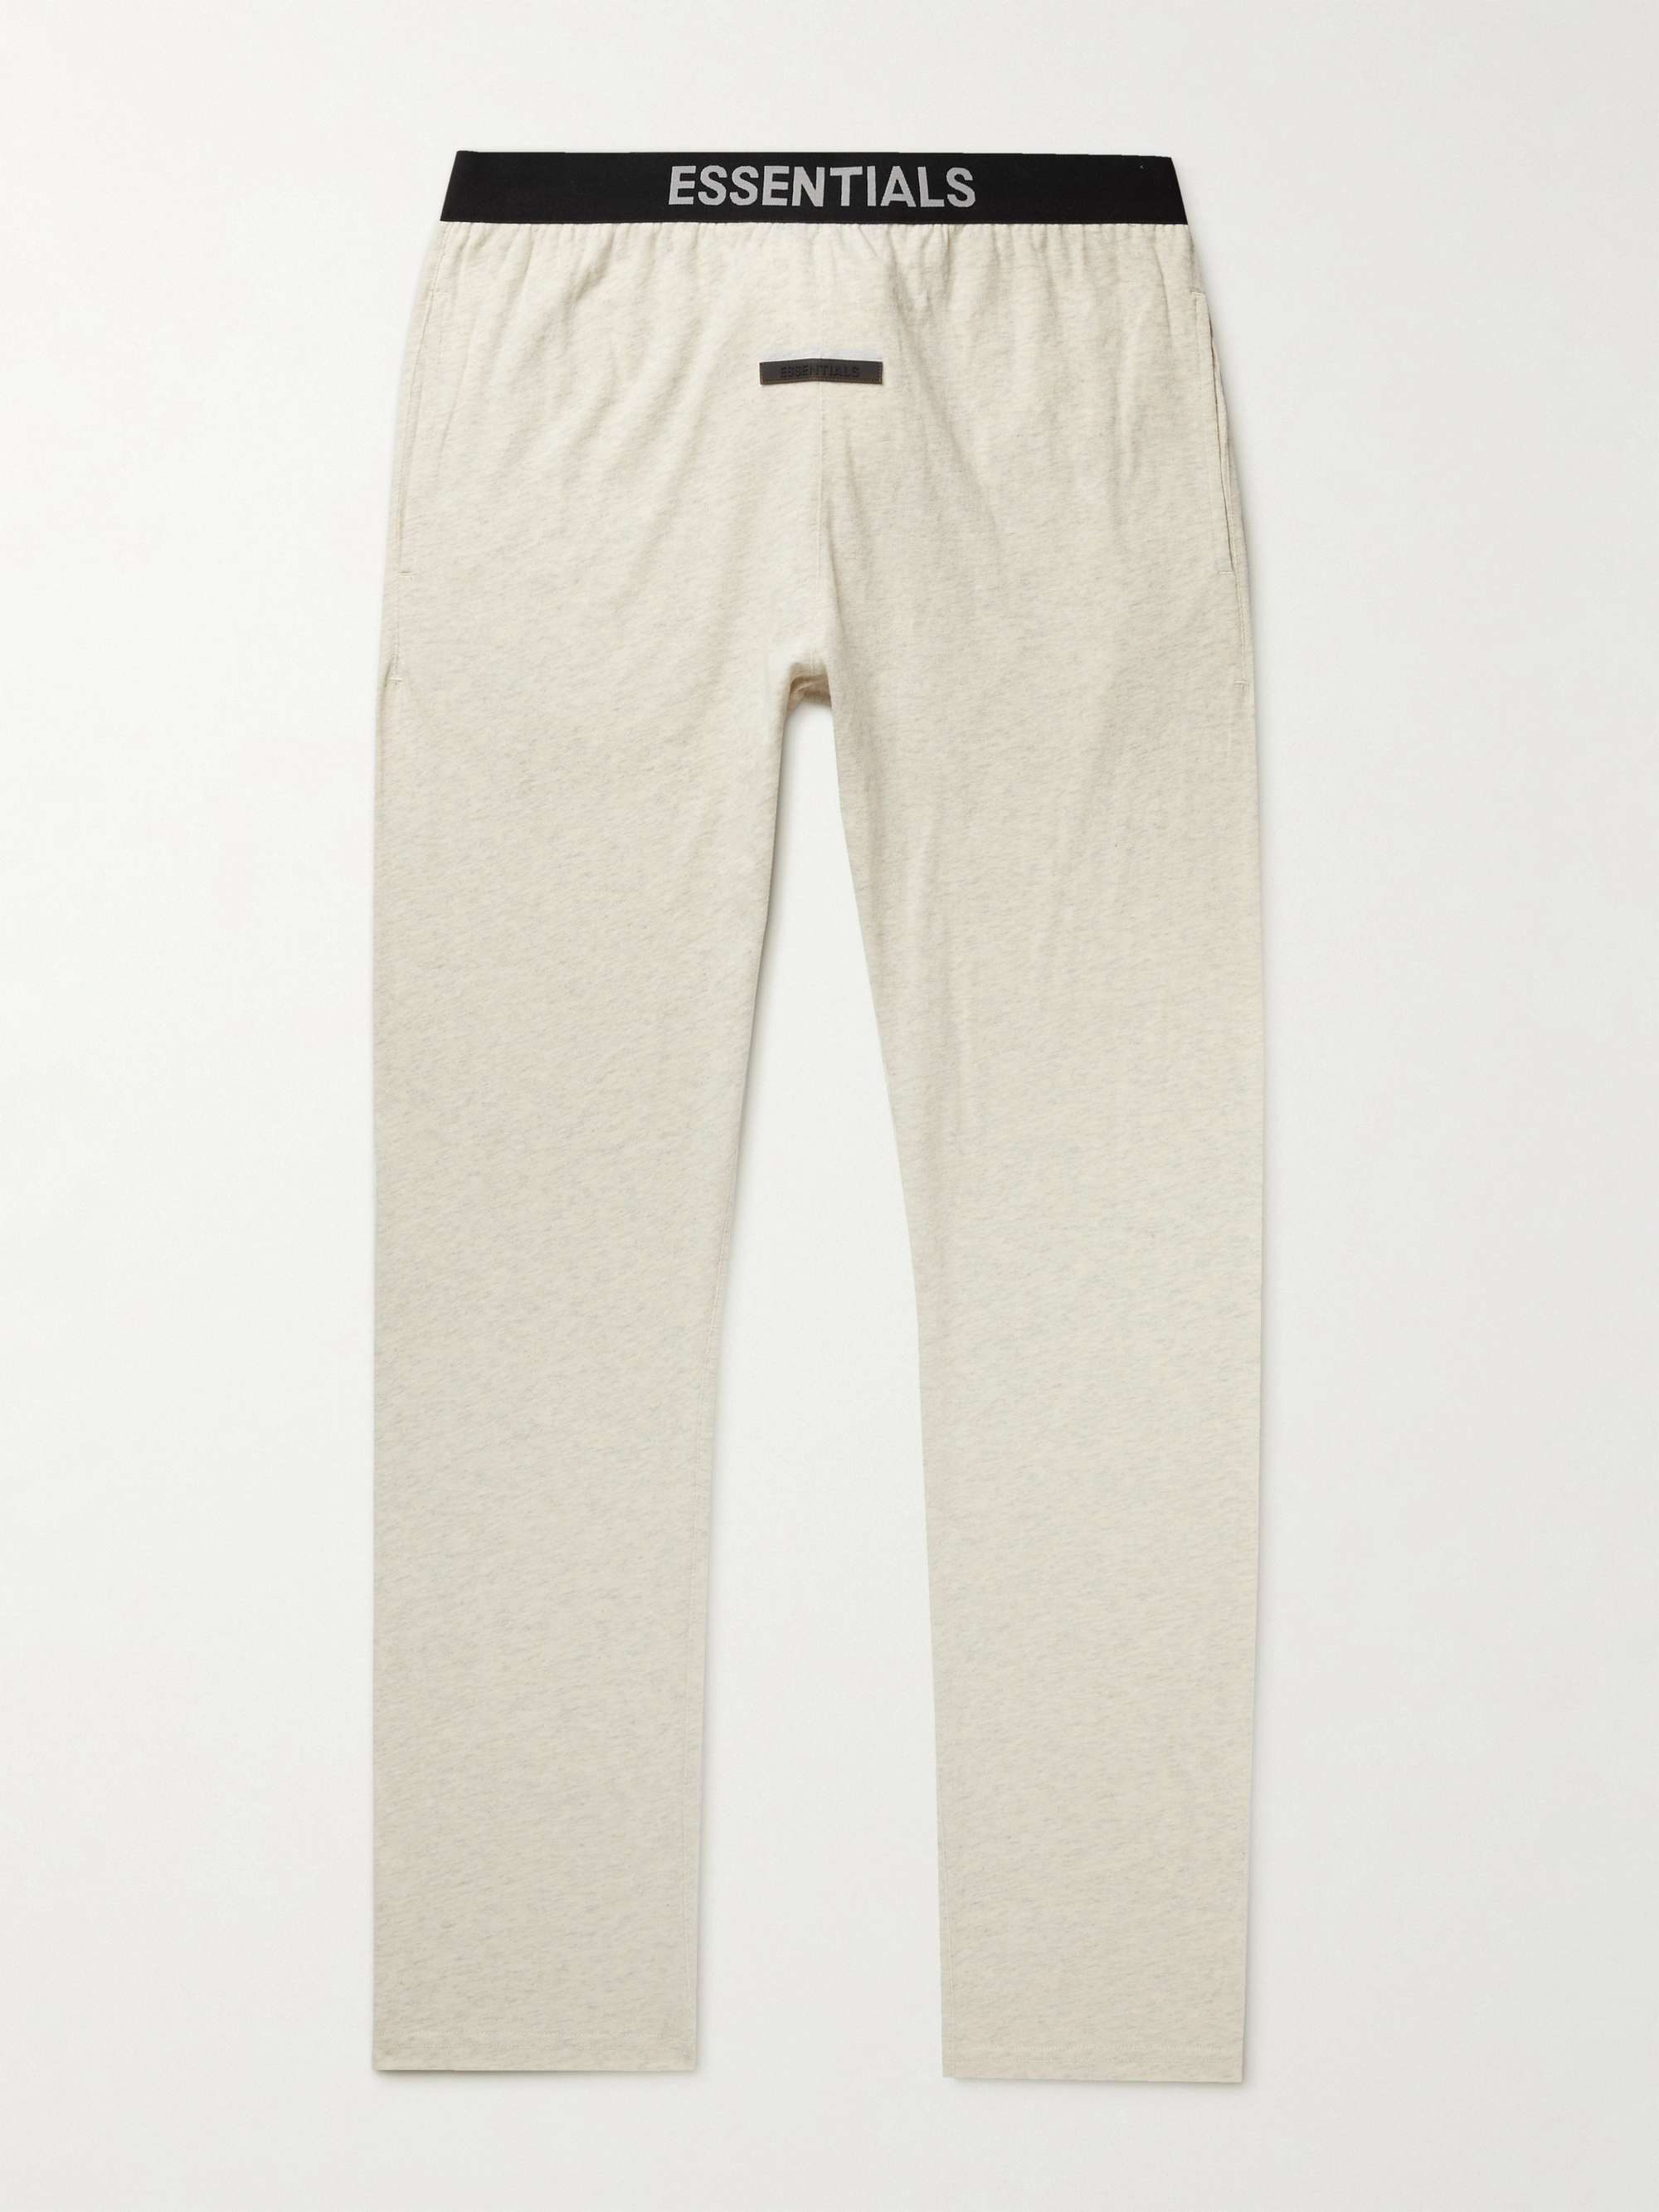 피어오브갓 에센셜 스웻팬츠 FEAR OF GOD ESSENTIALS Slim-Fit Tapered Cotton-Blend Jersey Sweatpants,Cream